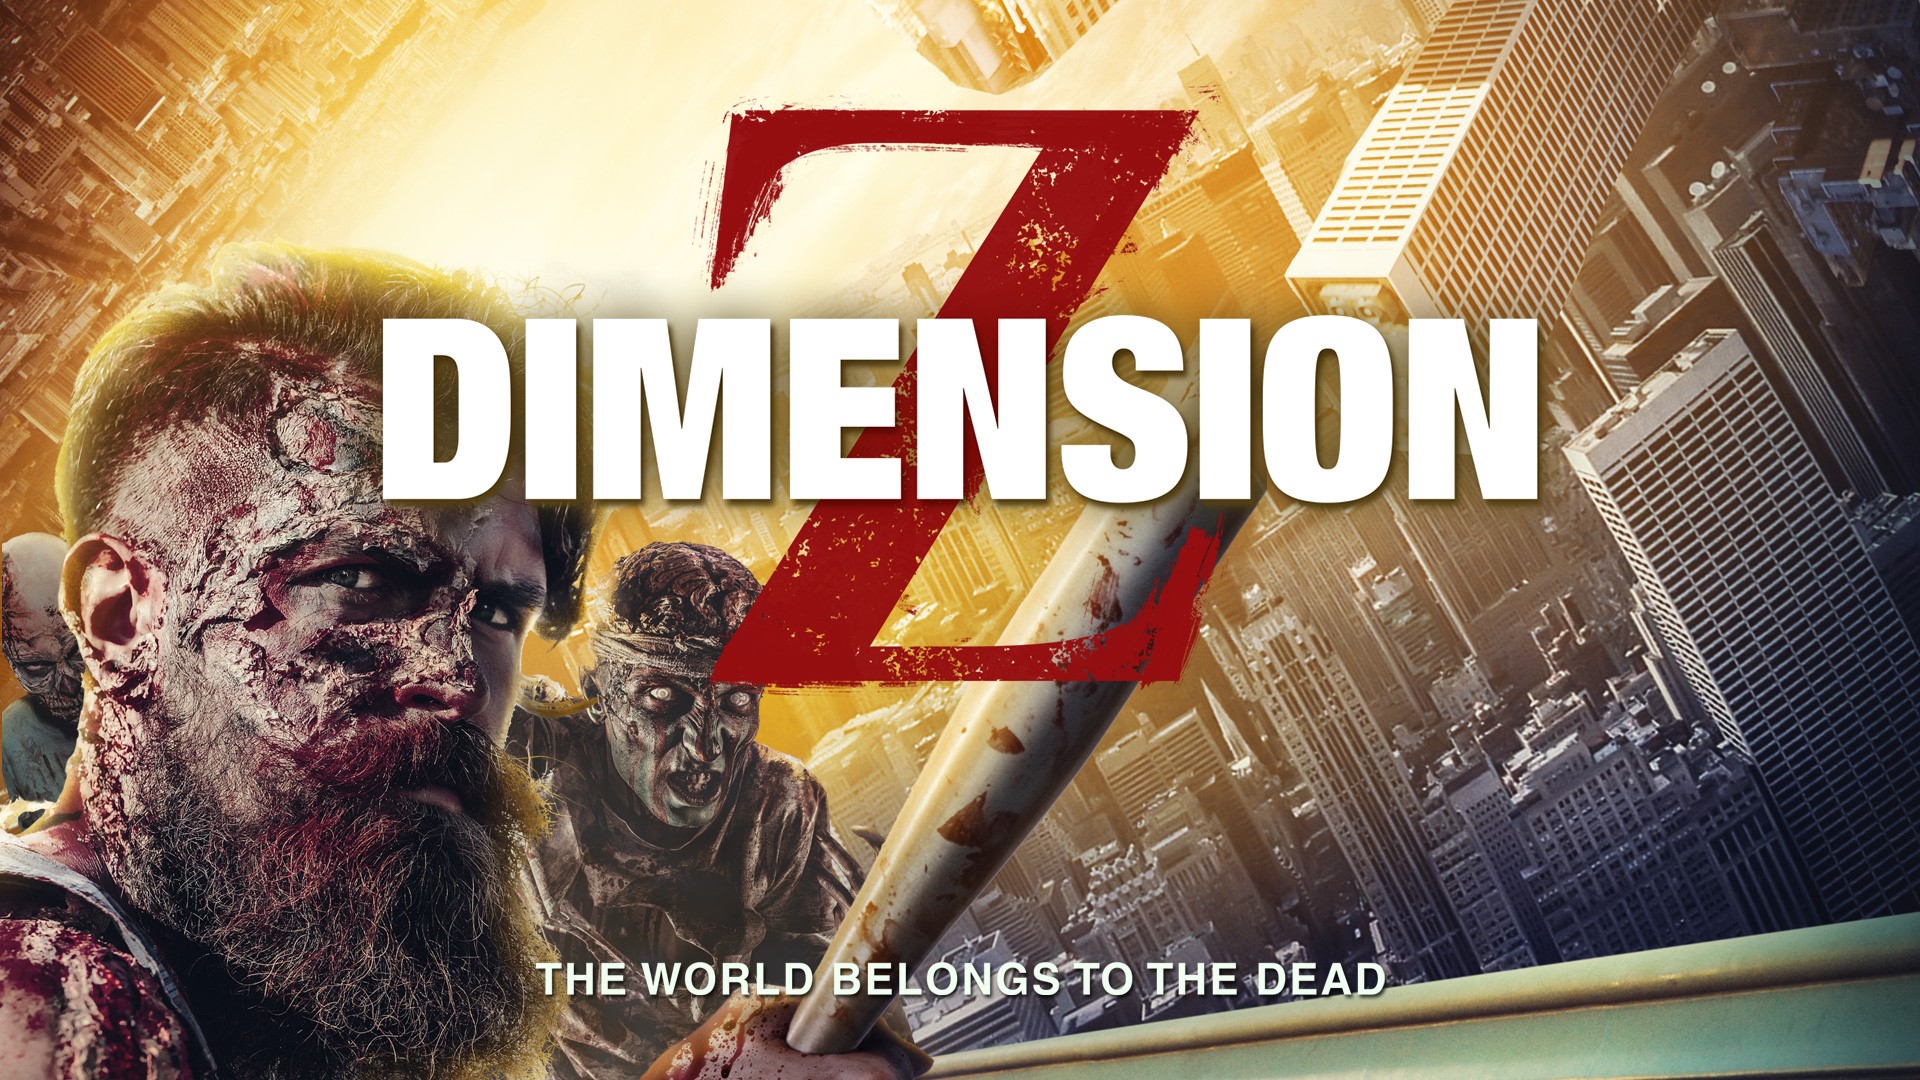 Dimension Z